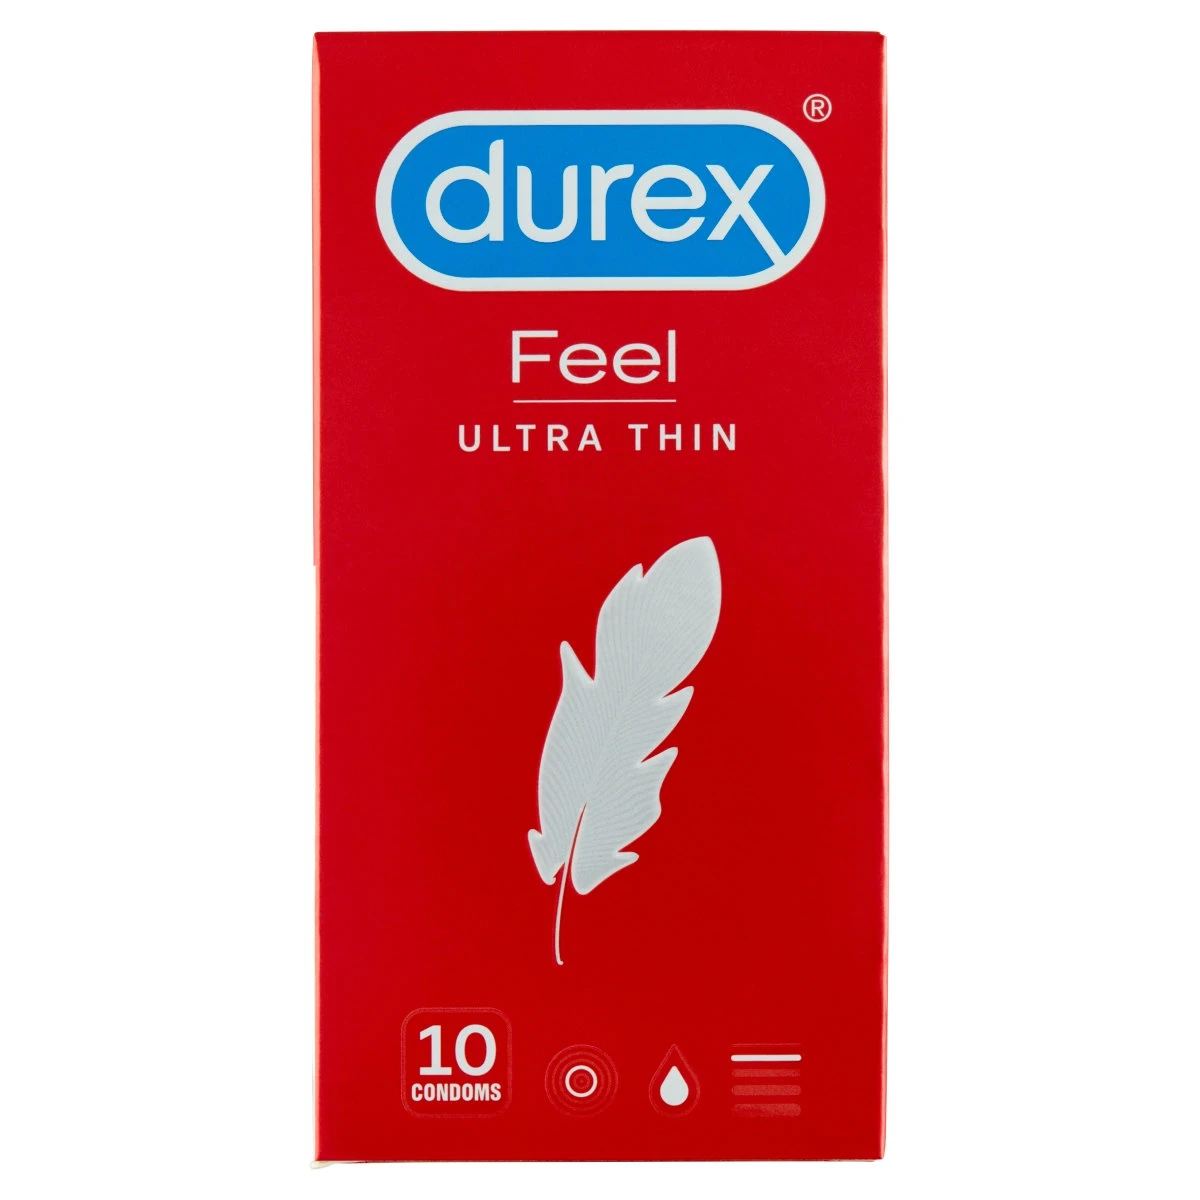 Durex Óvszer Feel Ultra Thin